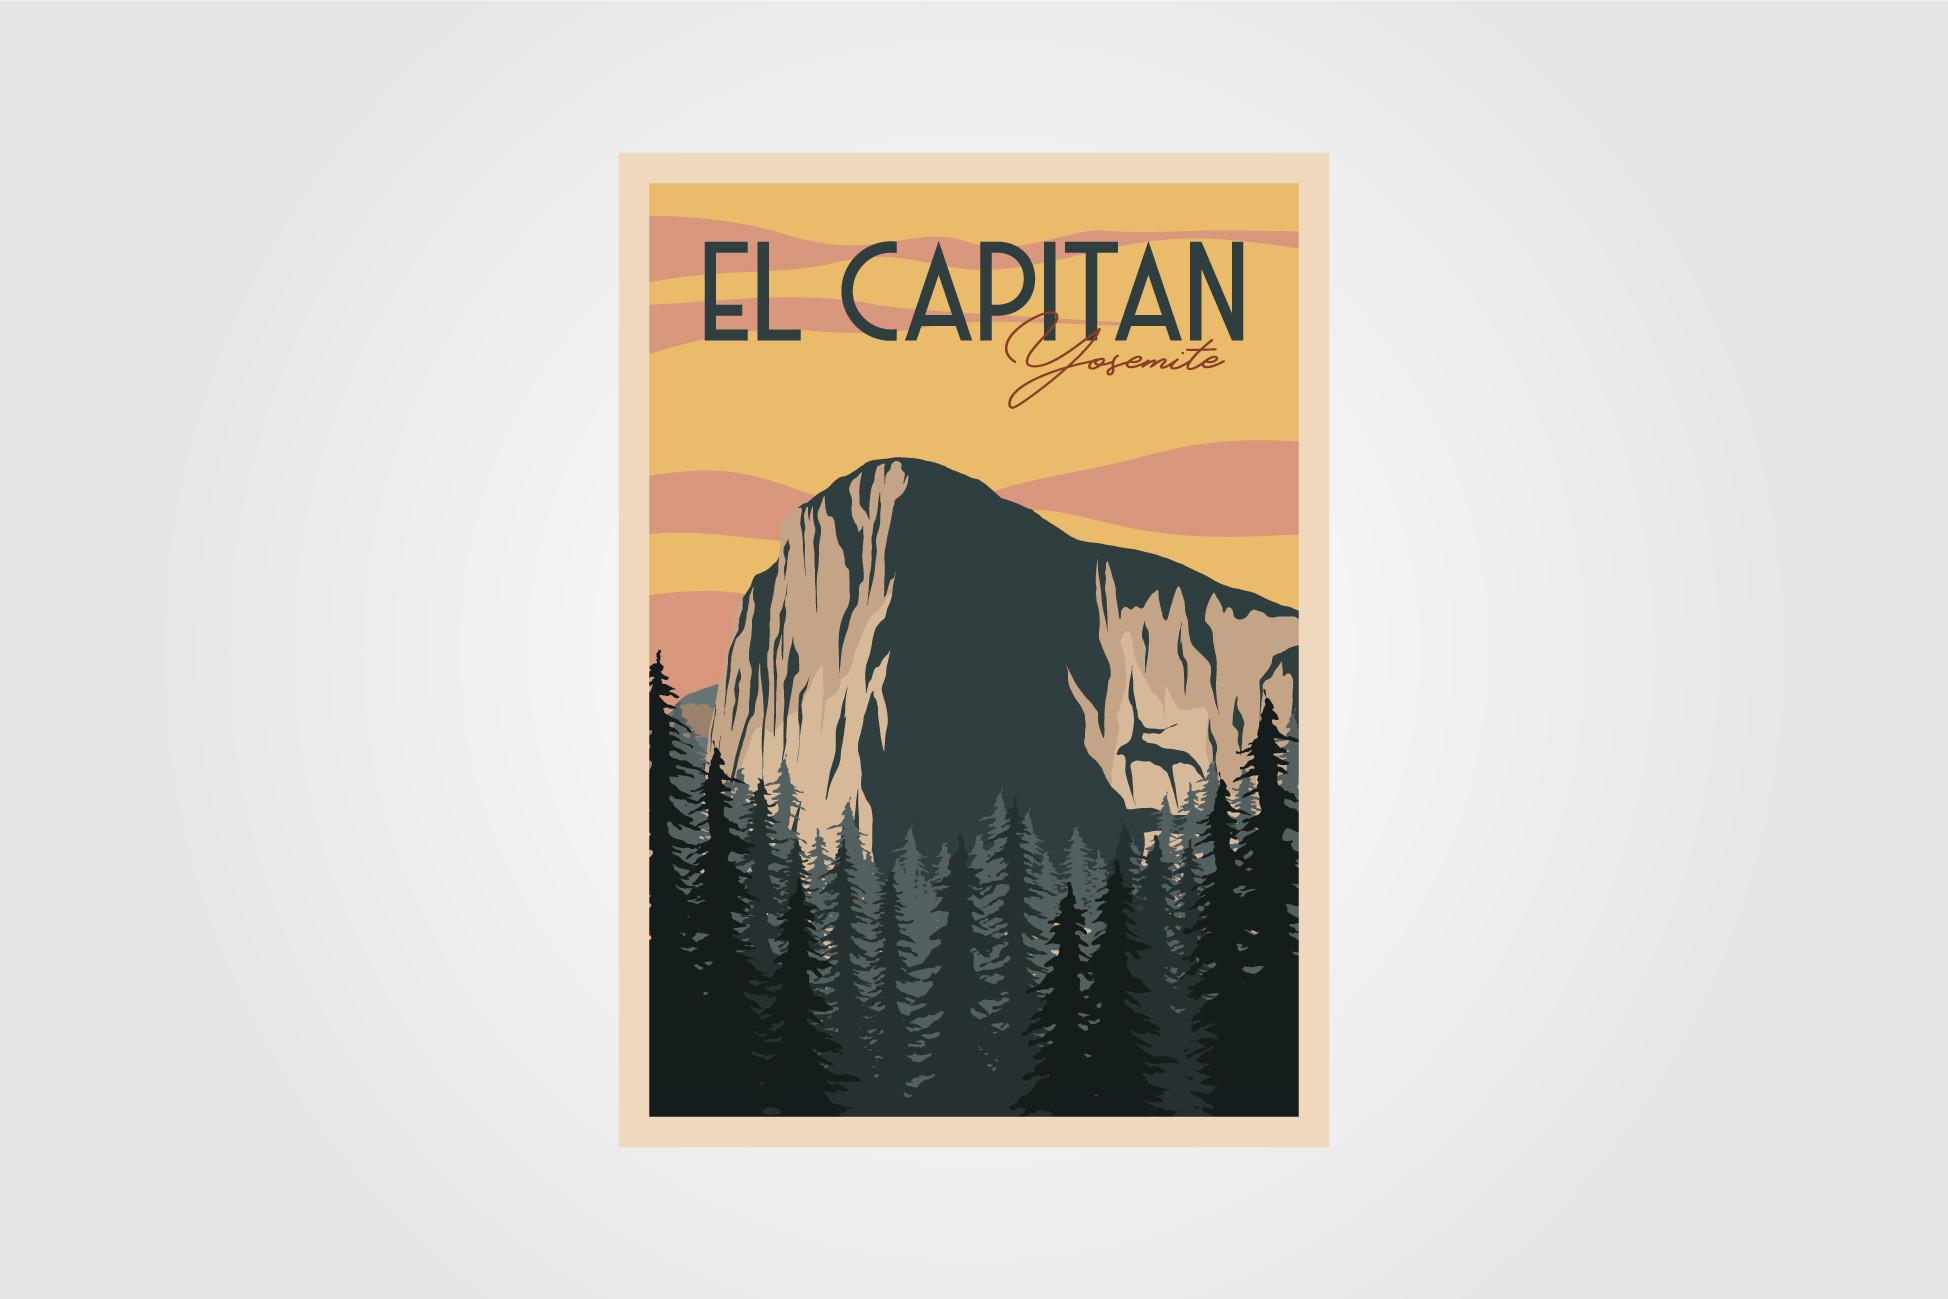 El Capitan in Yosemite Vintage Poster